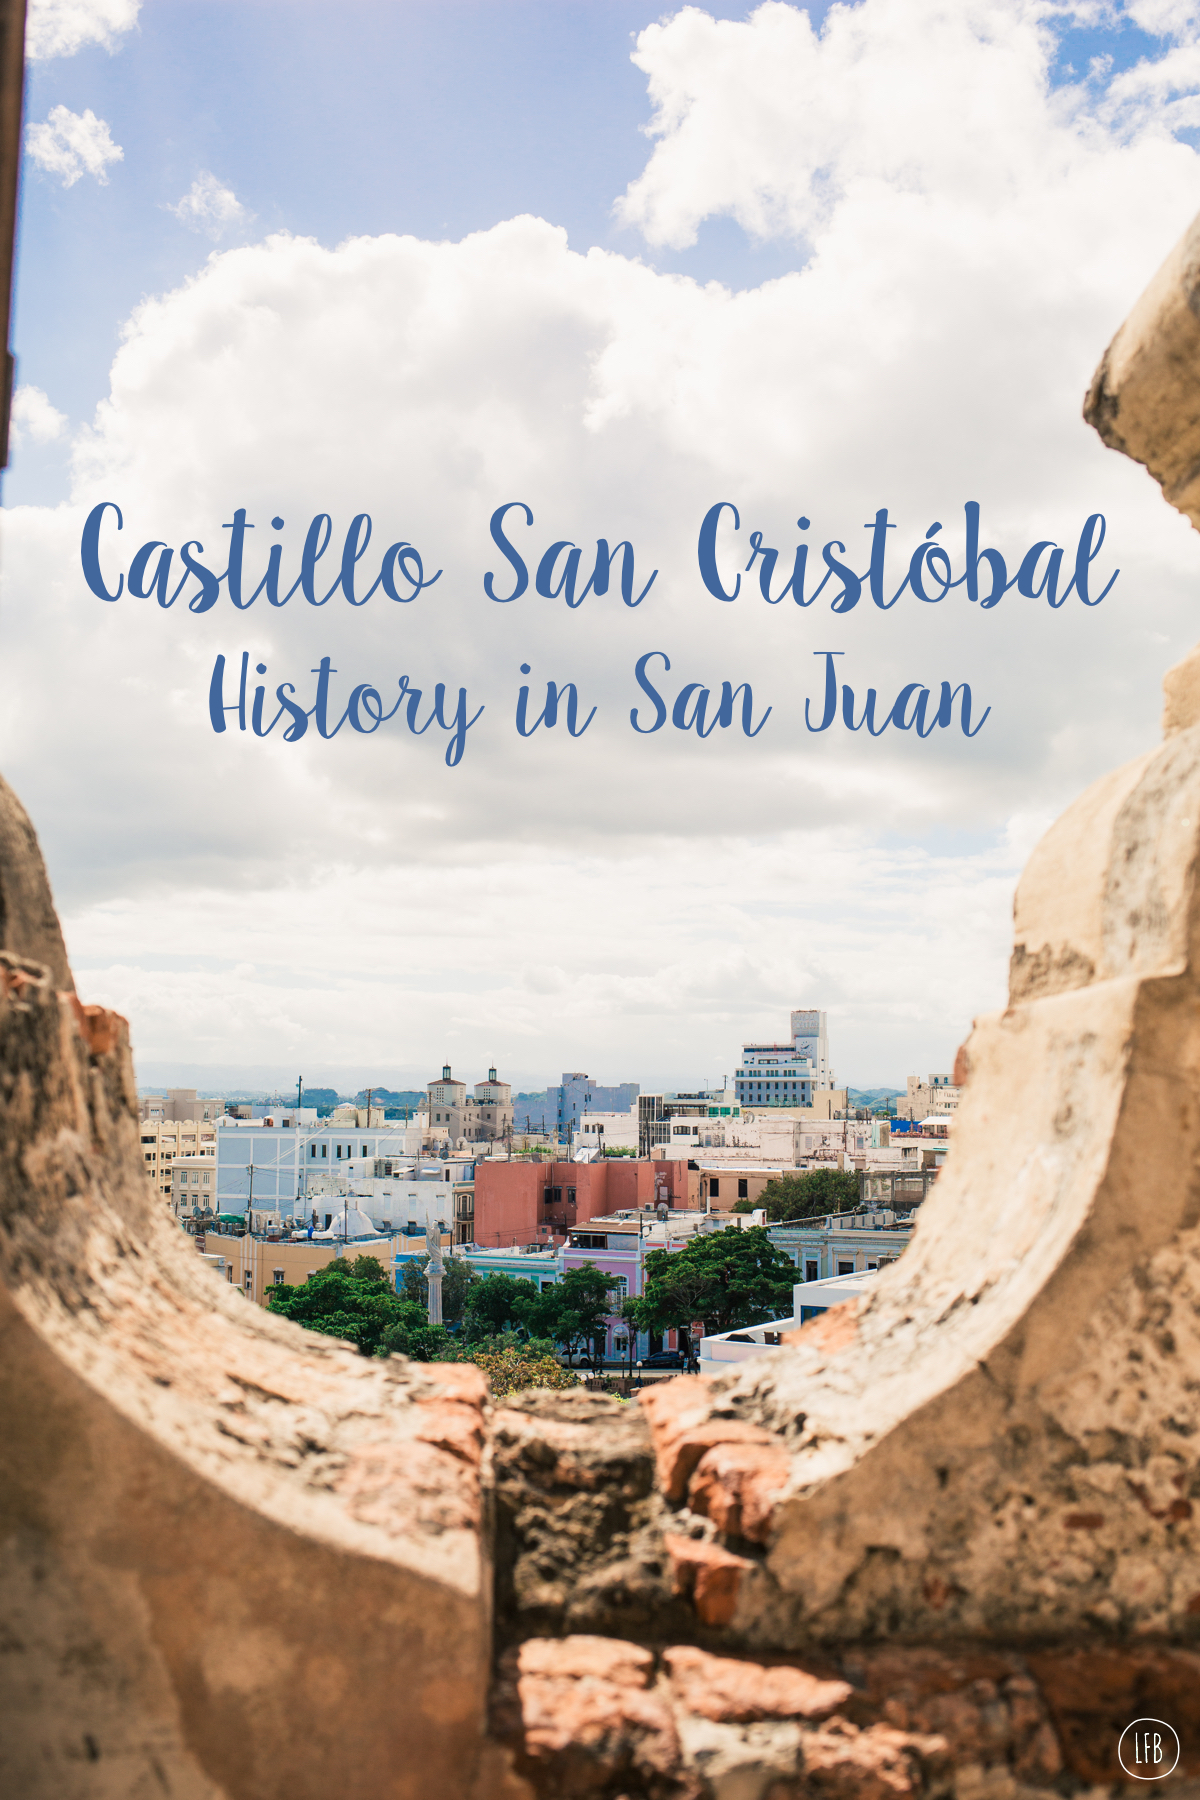 photos of Castillo San Cristóbal - taken by Rae Tashman for lovefromberlin.net